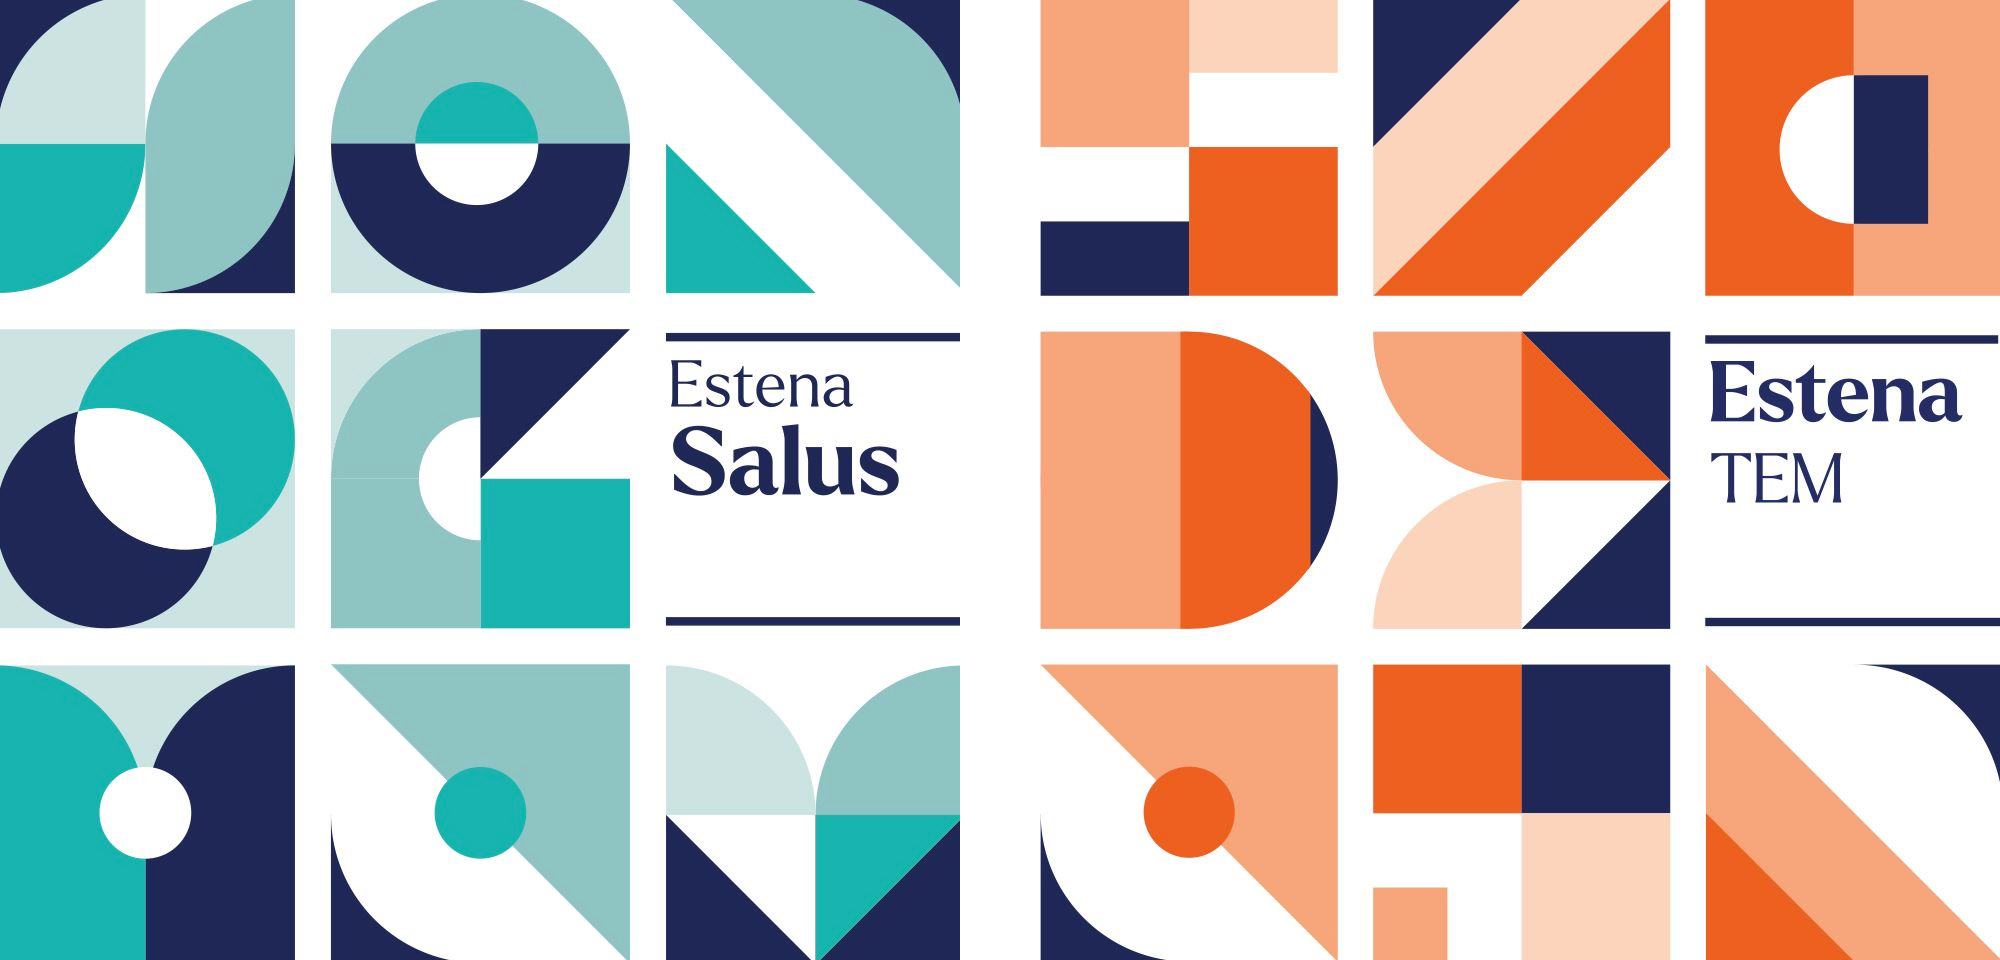 Estena Escuela de Salud by Barceló Estudio - Creative Work - $i